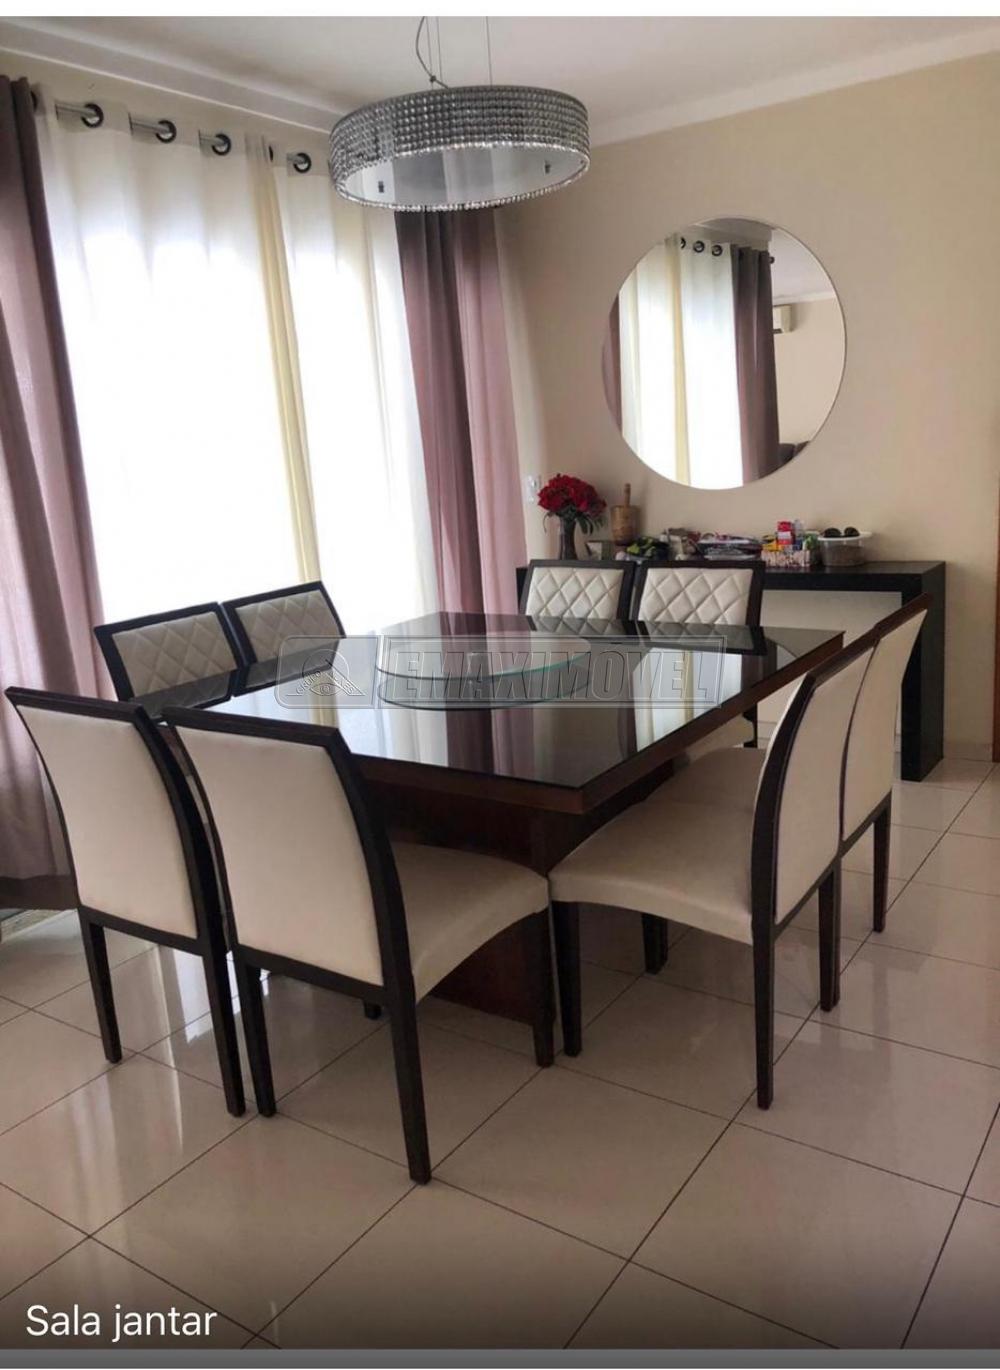 Comprar Casa / em Condomínios em Sorocaba R$ 950.000,00 - Foto 11